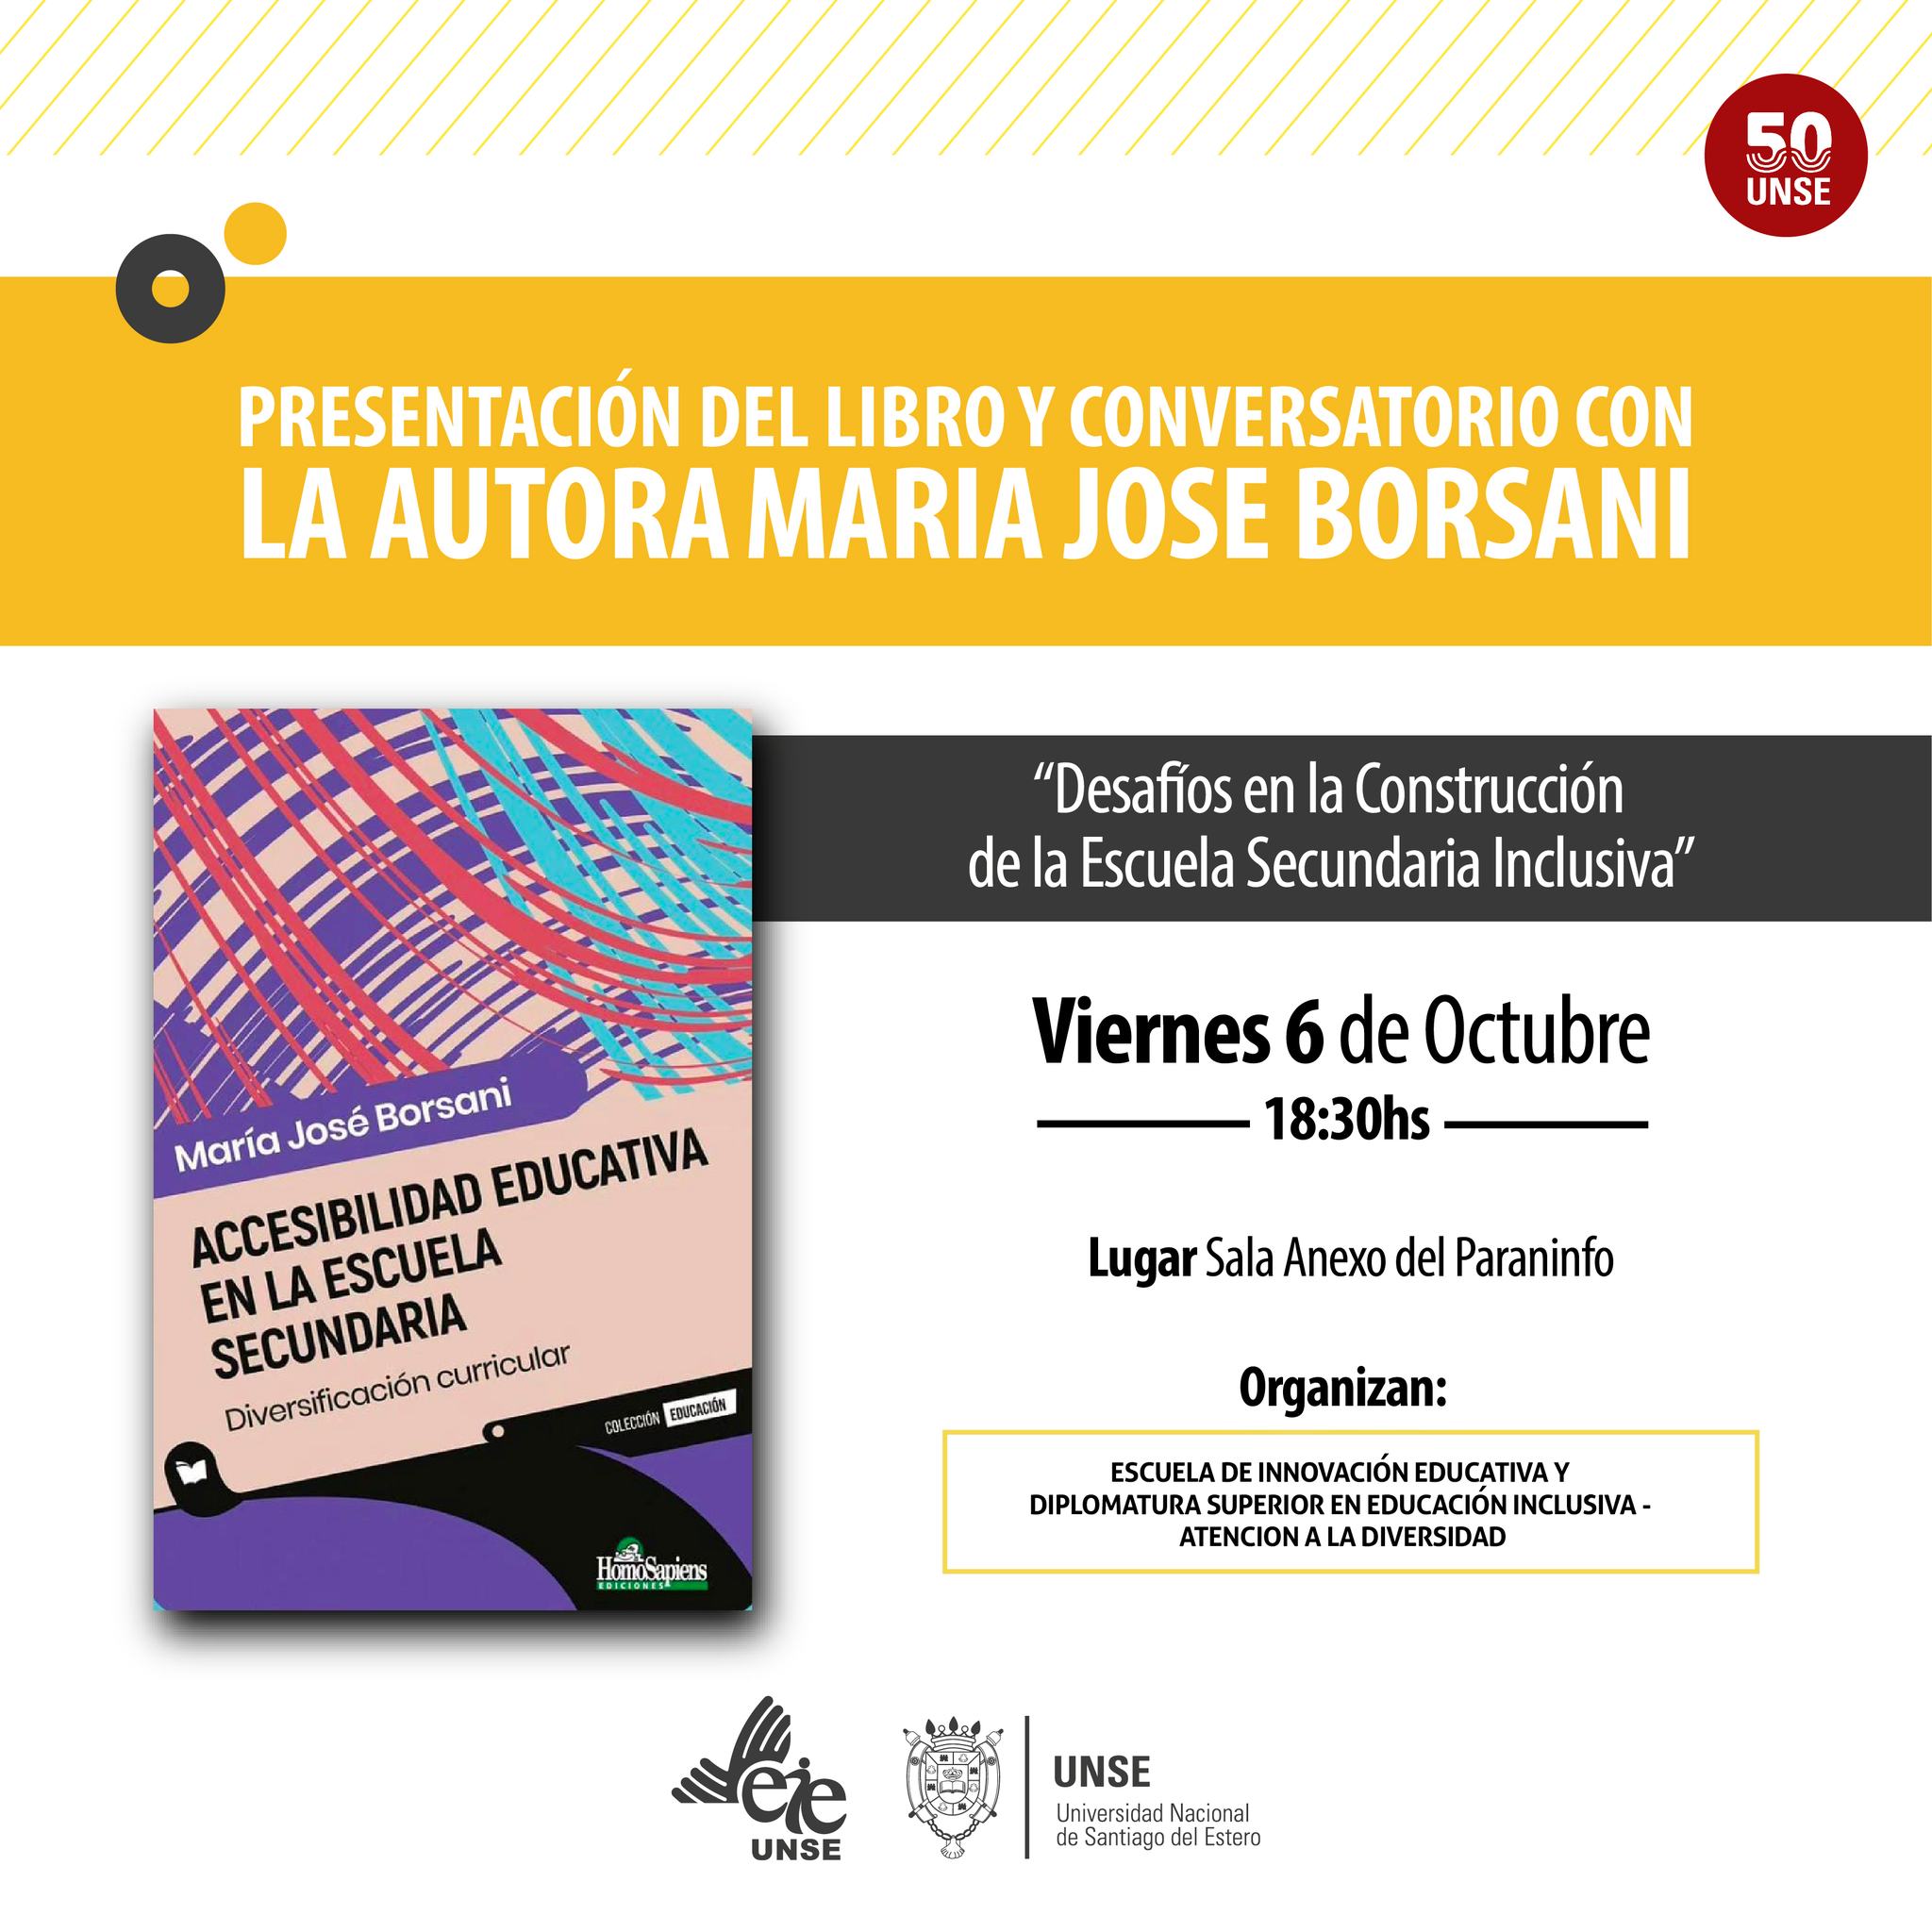 Presentación del Libro y Conversatorio con la autora Maria José Borsani